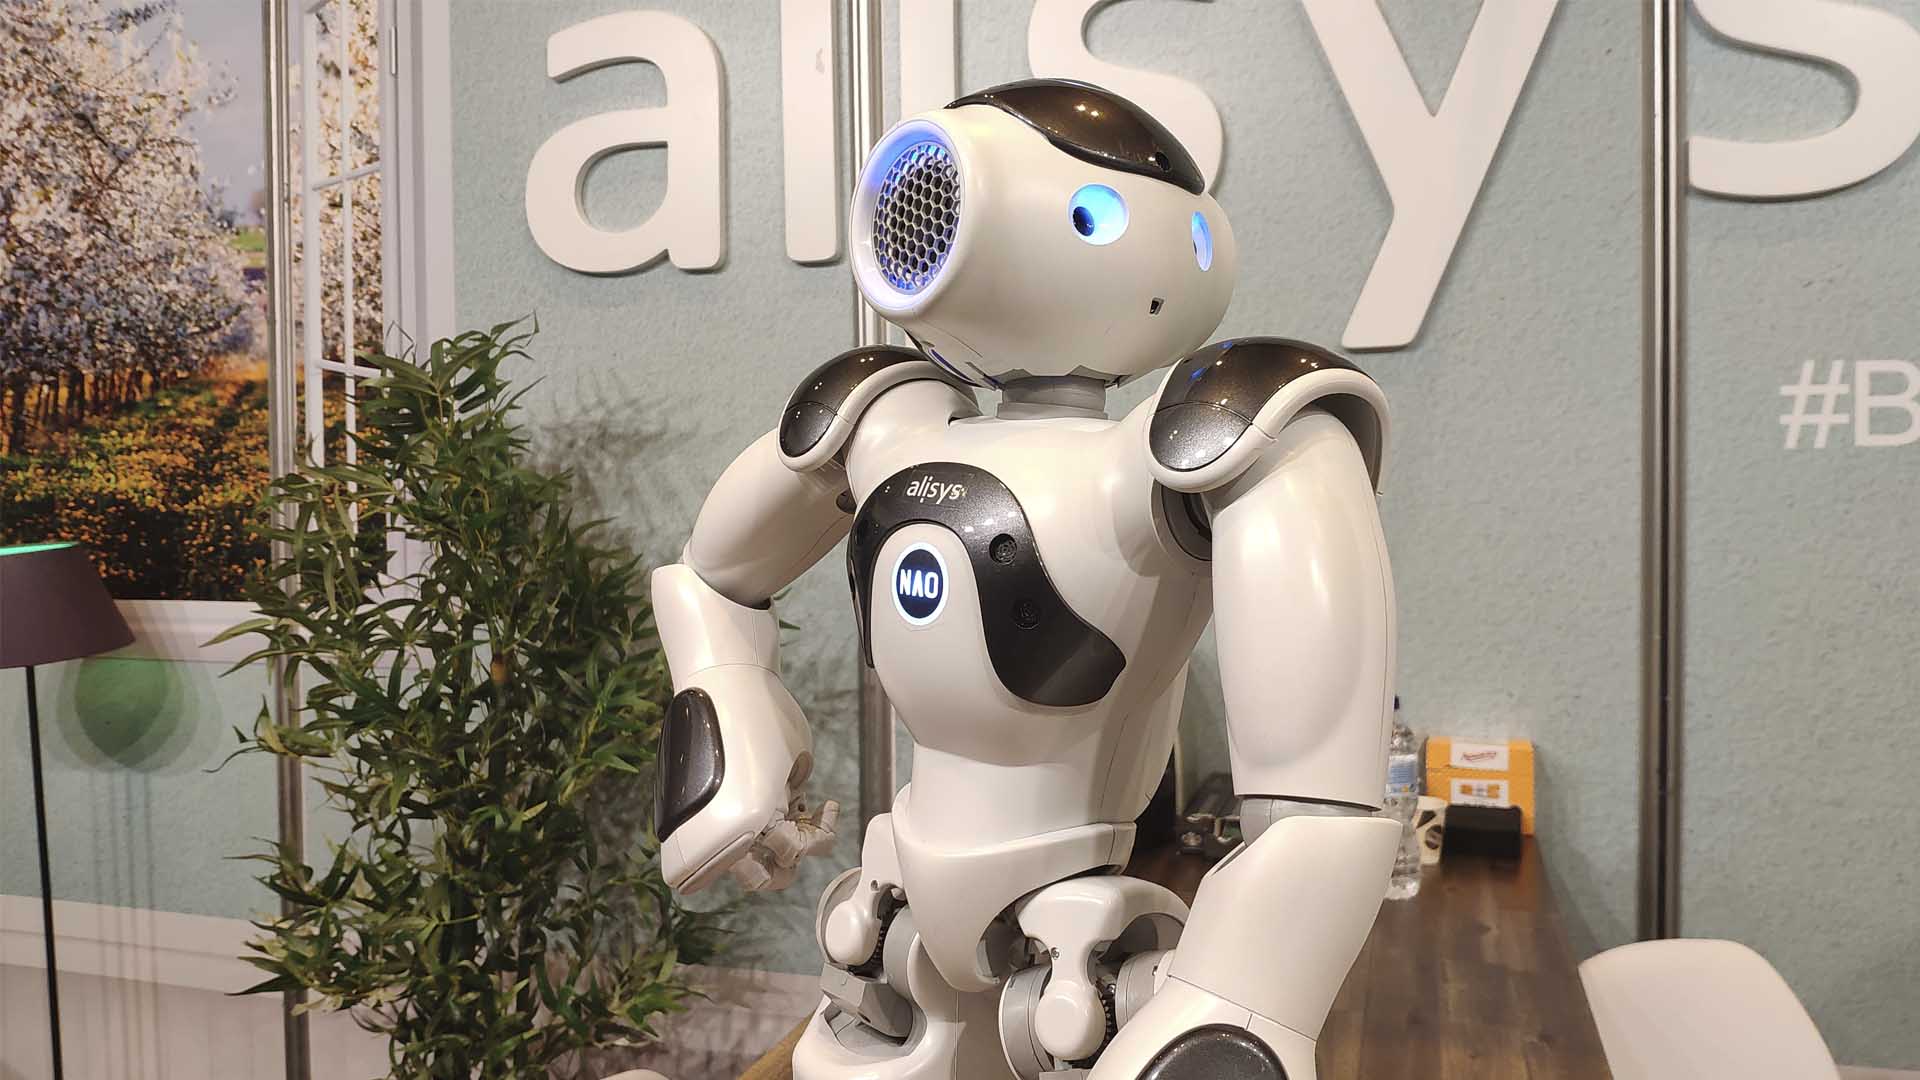 Los 5 robots mas 'cool' de la Global Robot Expo 2019